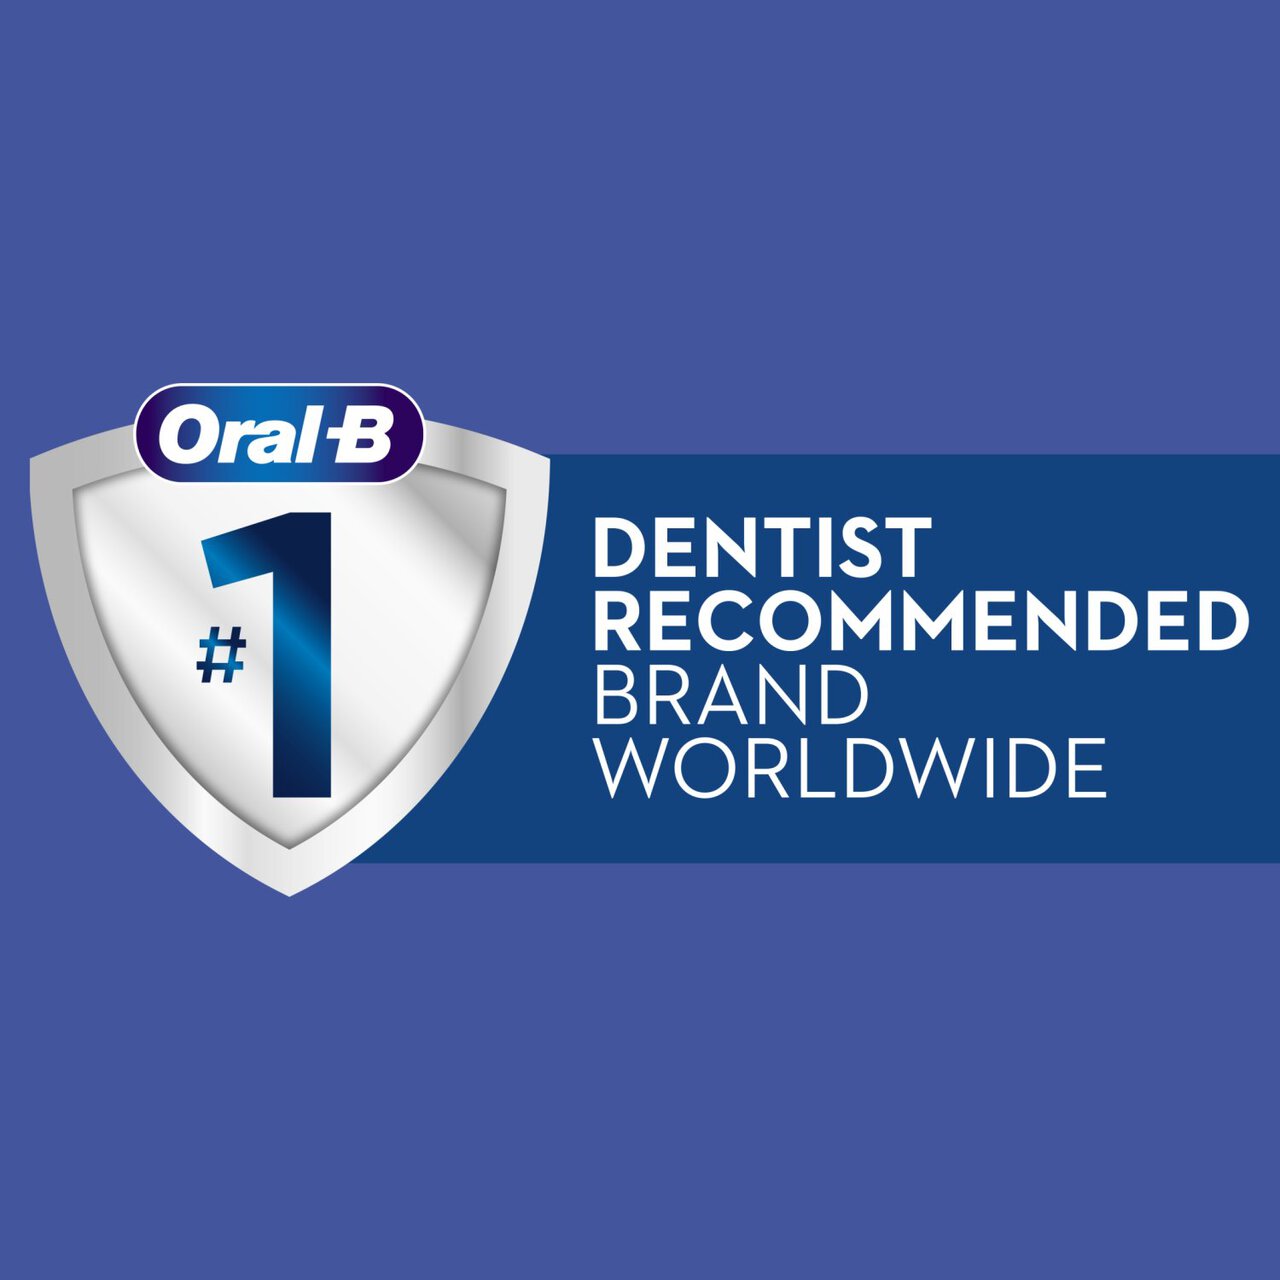 Oral-B Complete 5 Way Clean 40 Medium Toothbrush